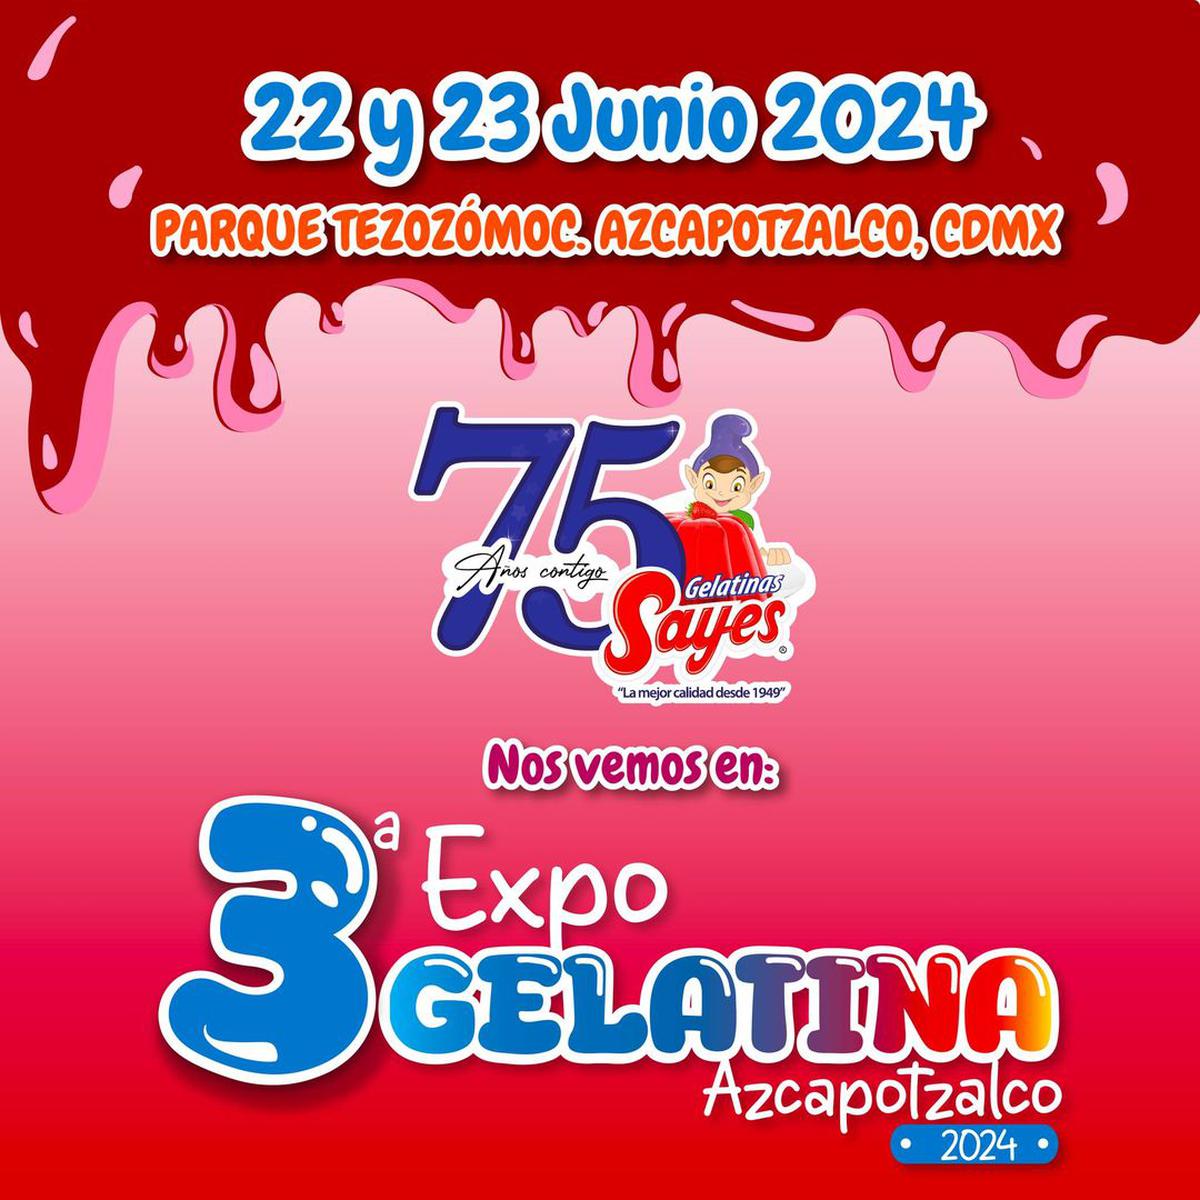 Expo Gelatina 2024 | La Expo Gelatina 2024 se llevará a cabo los días 22 y 23 de junio.
(Instagram/gelatinasayes)